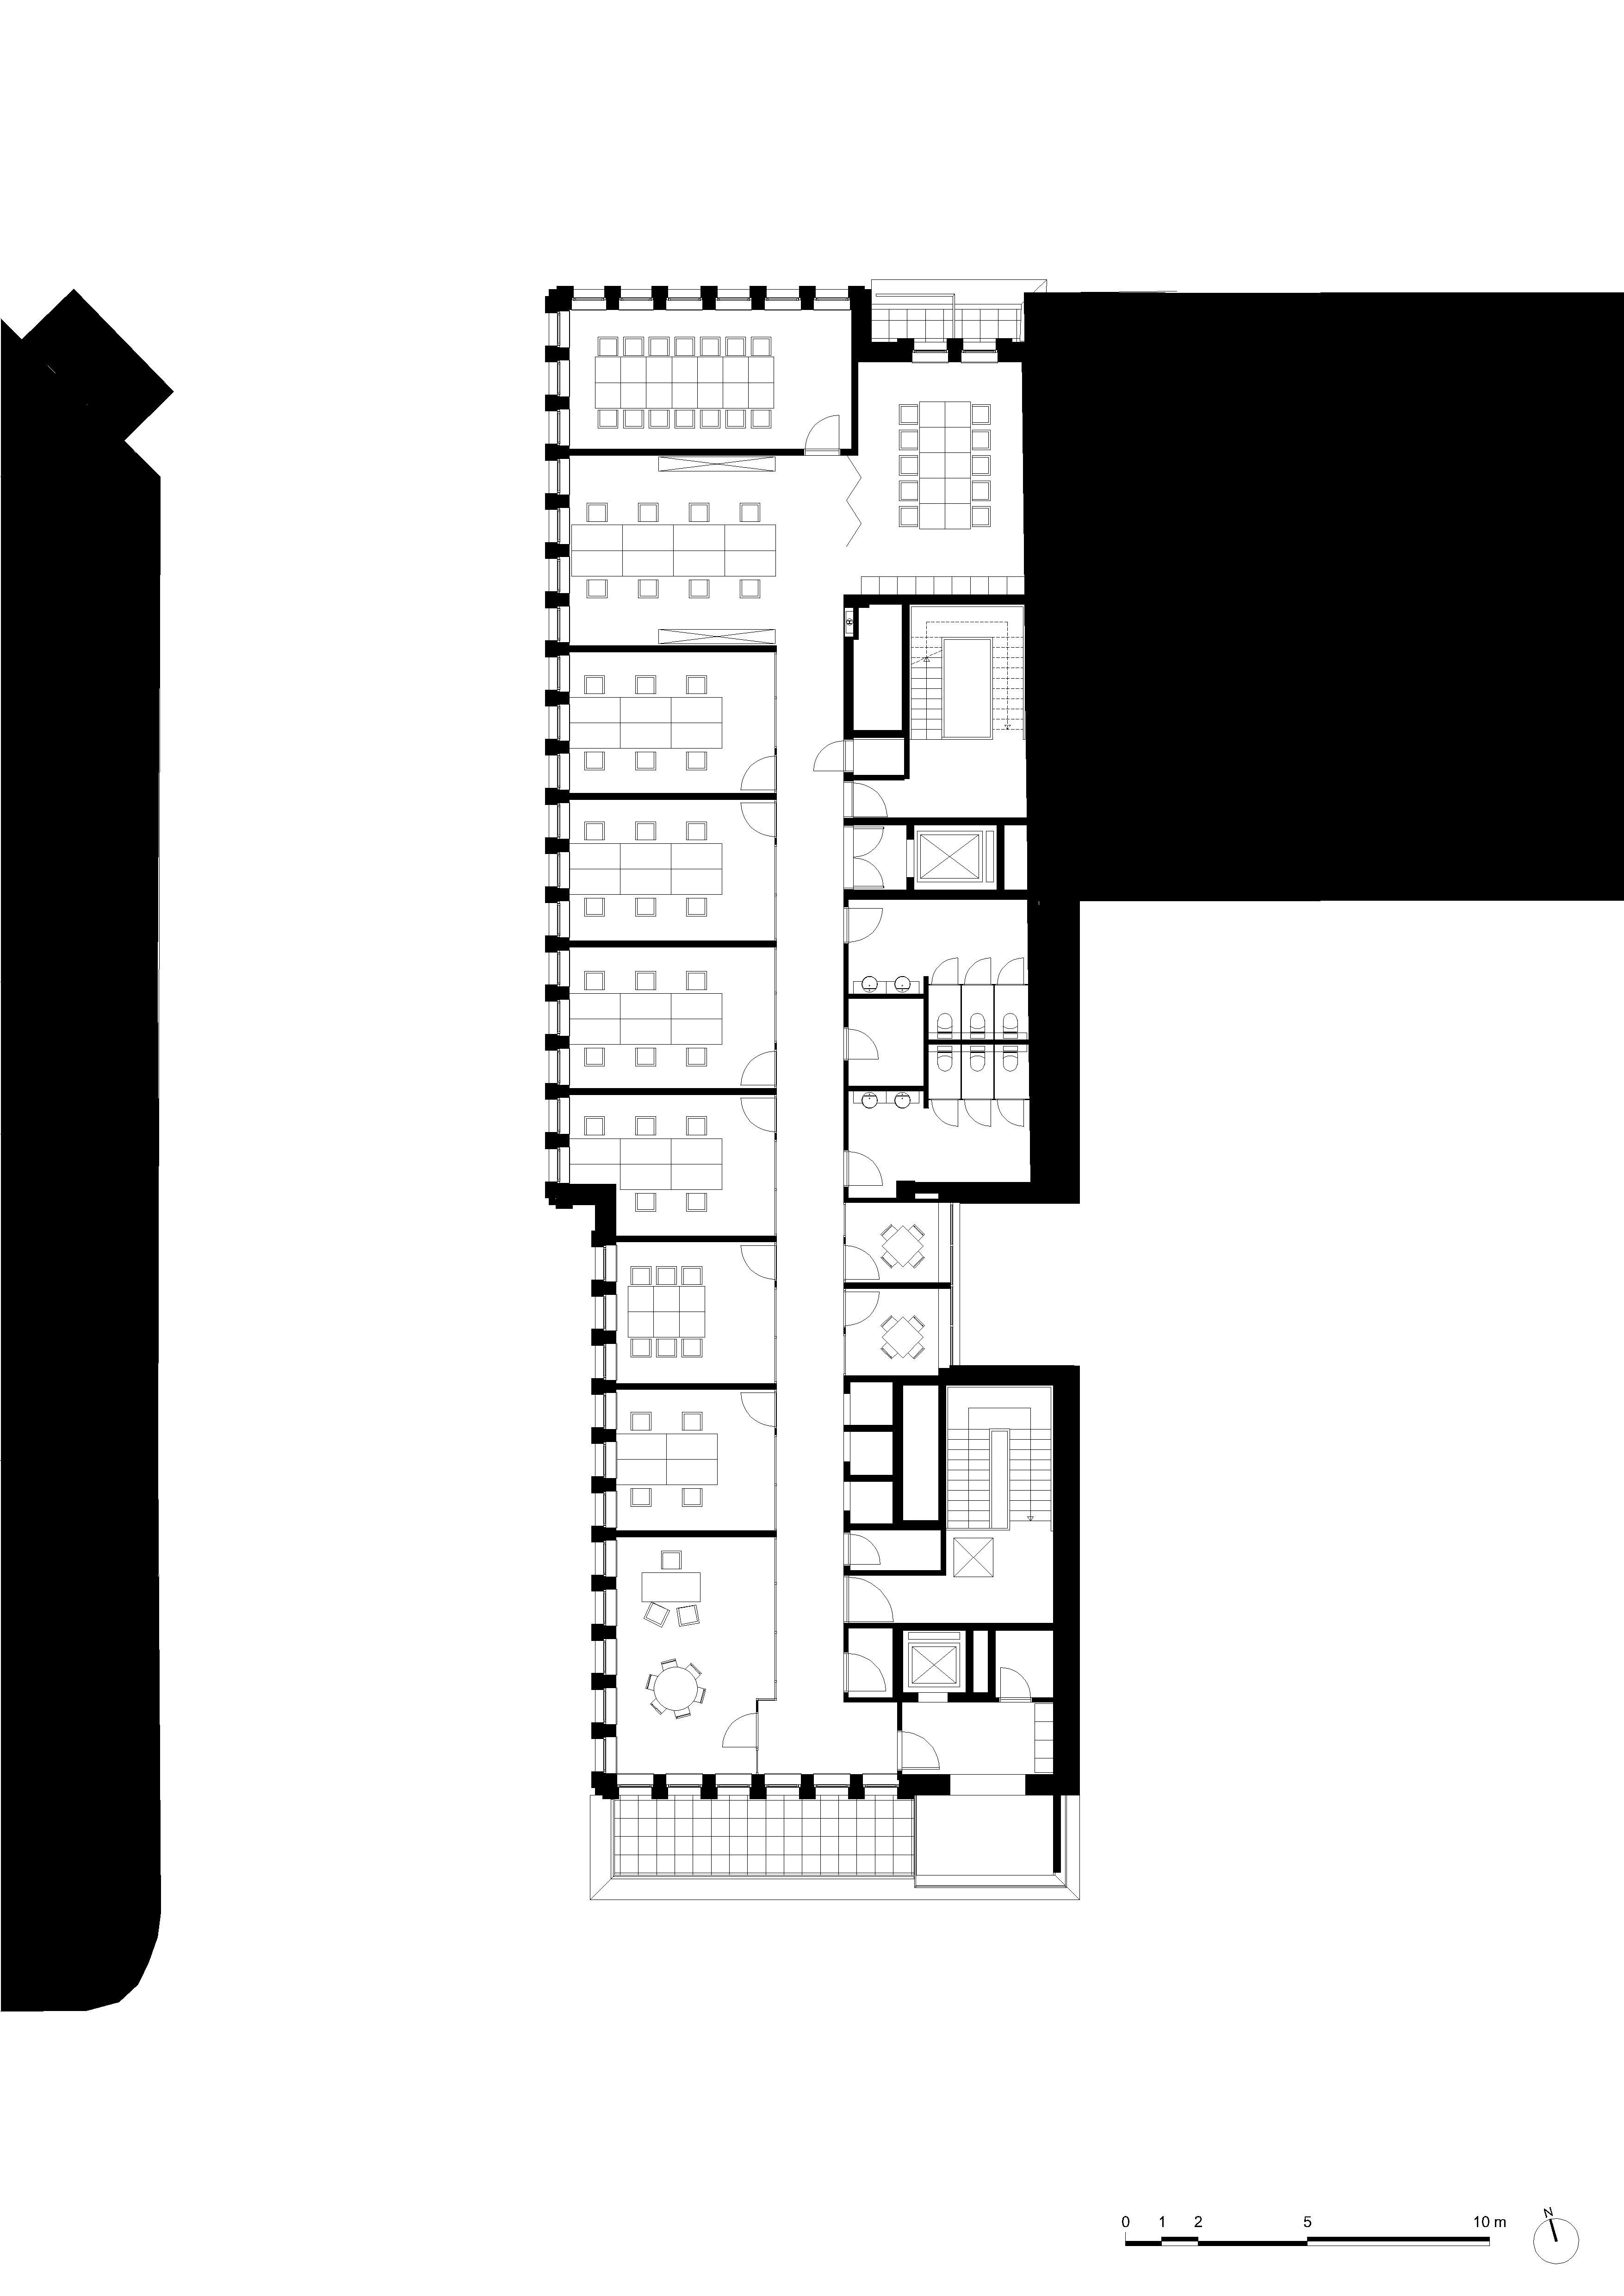 architecture-contemporaine-dockin-sambrinvest-bureau-innovation-charleroi-brique-émaillée-plan-cinquième-étage